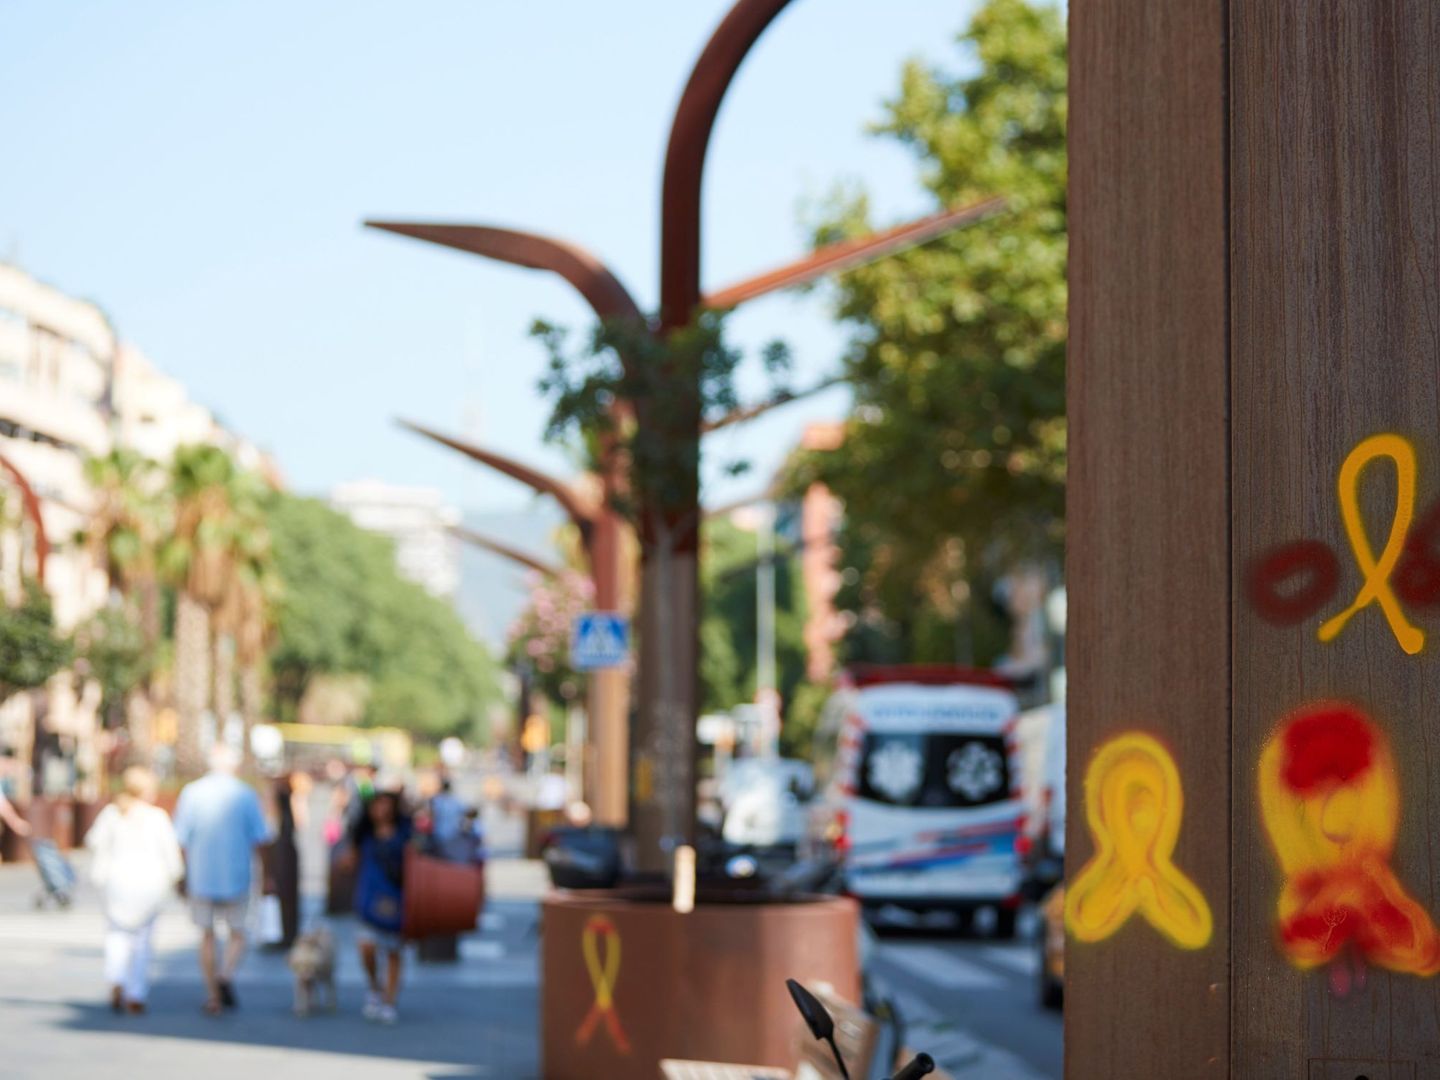 Lazos amarillos en una calle de Barcelona. (EFE)